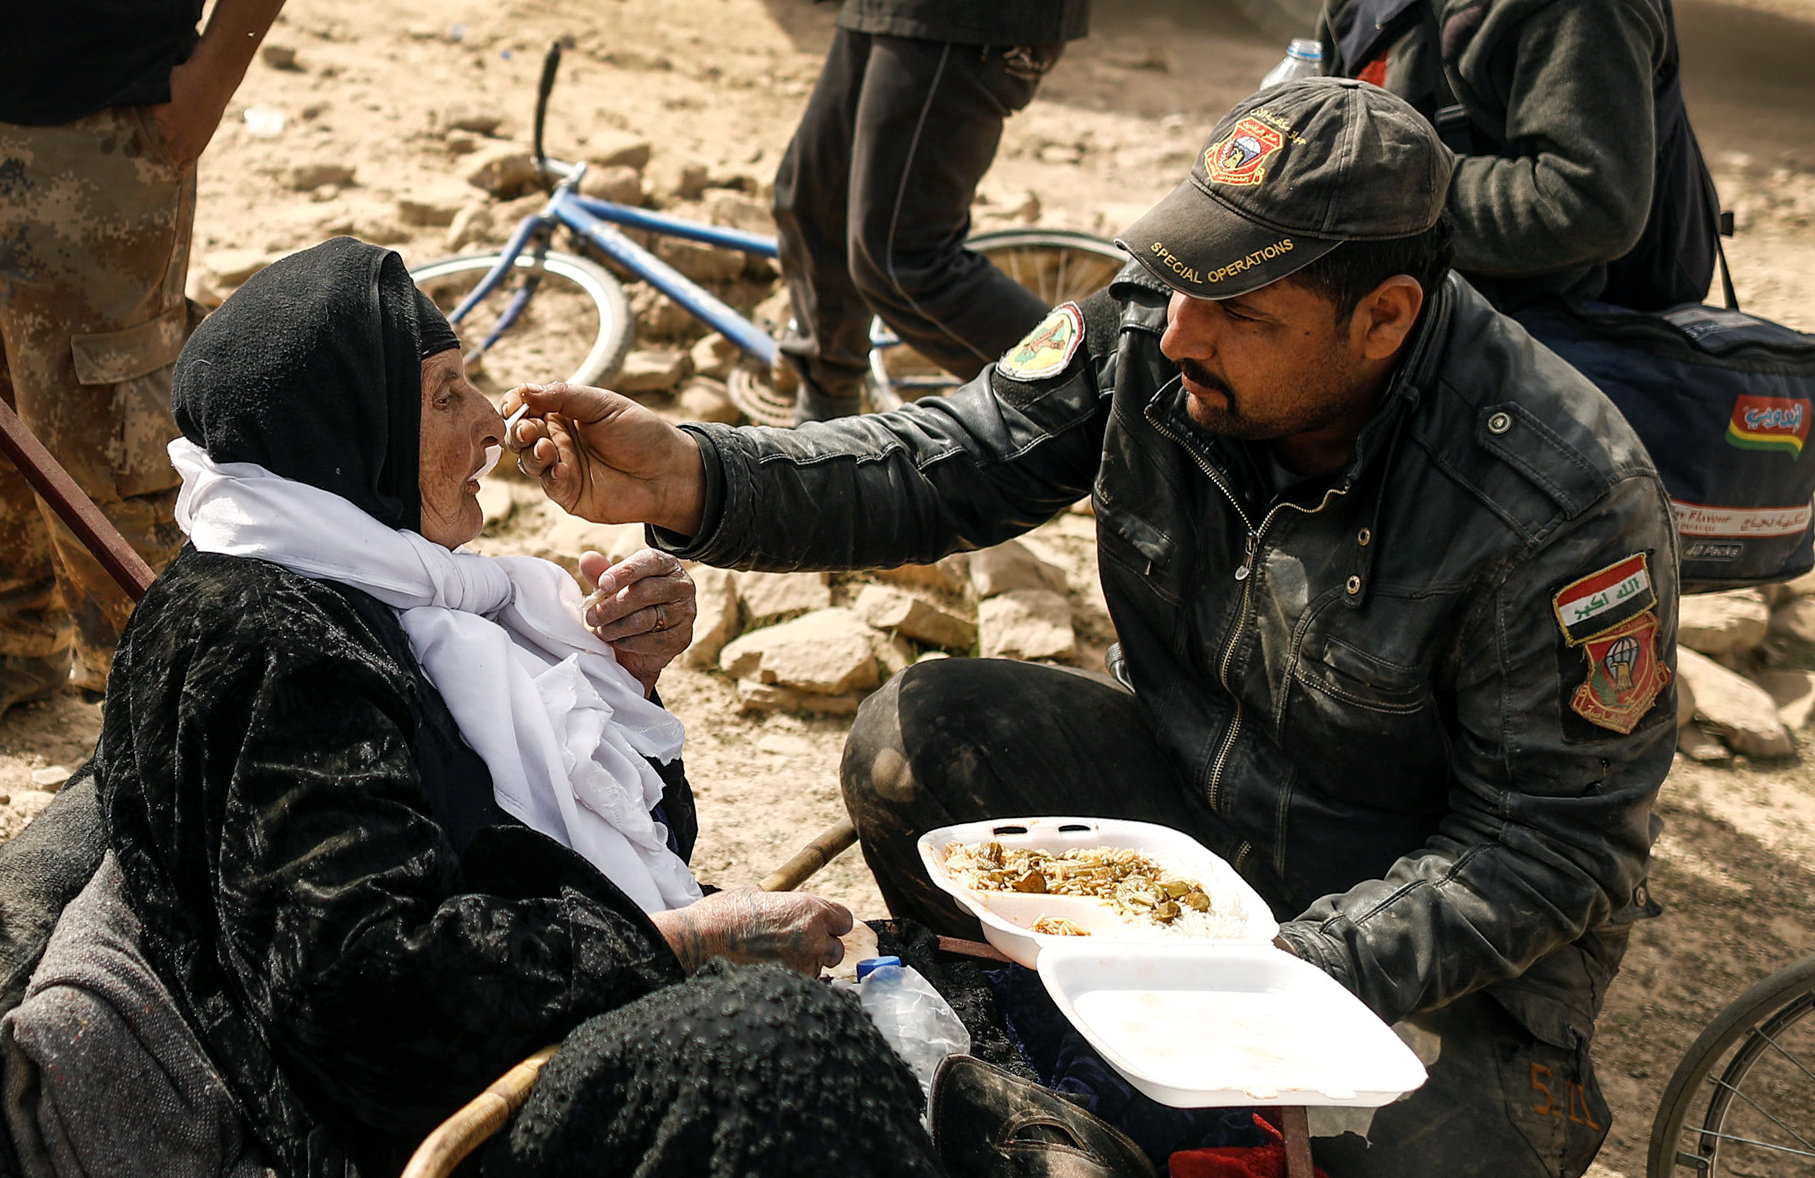 أحد أفراد القوات الخاصة العراقية يطعم سيدة عجوز داخل قاعدة عسكرية